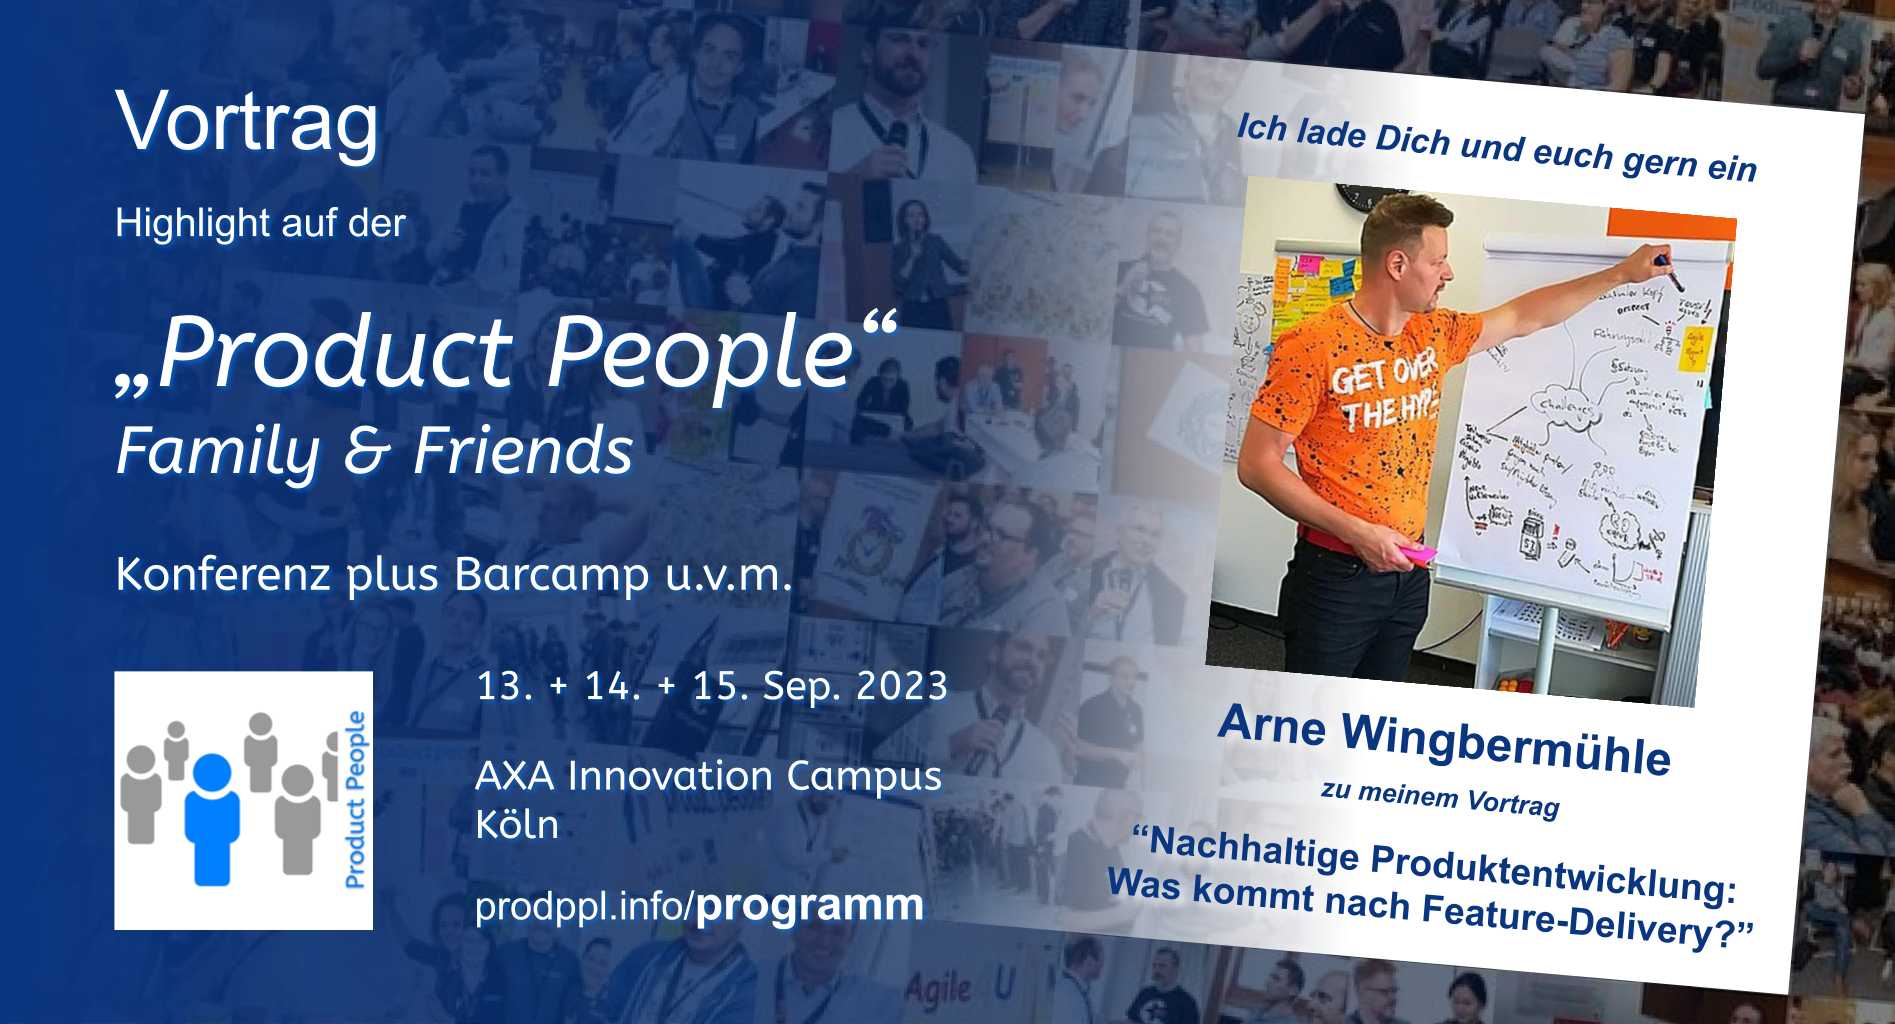 "Nachhaltige Produktentwicklung: Was kommt nach Feature-Delivery?" - M-Vortrag von und mit Arne Wingbermühle - auf der 'Product People - Family & Friends' - Konferenz plus Barcamp - Köln 2023